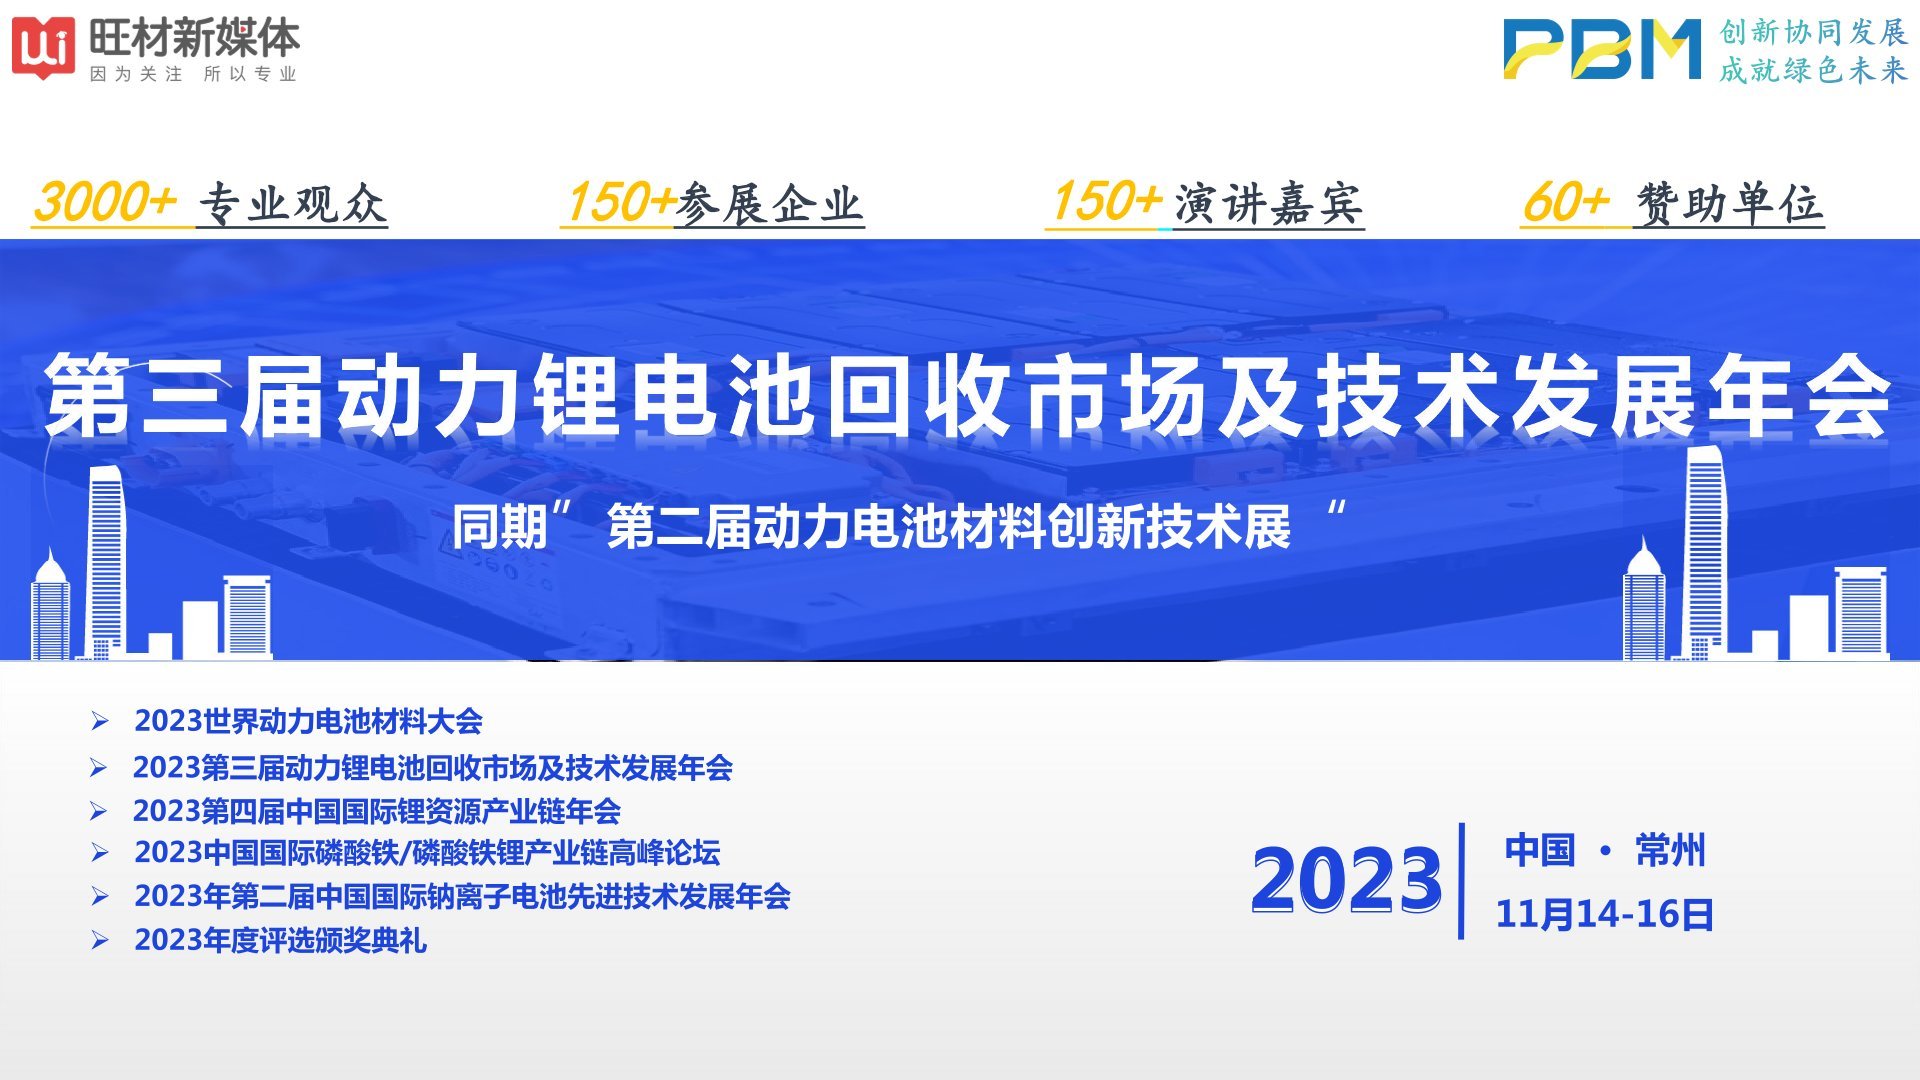 2023第三屆動力鋰電池回收市場及技術發展年會